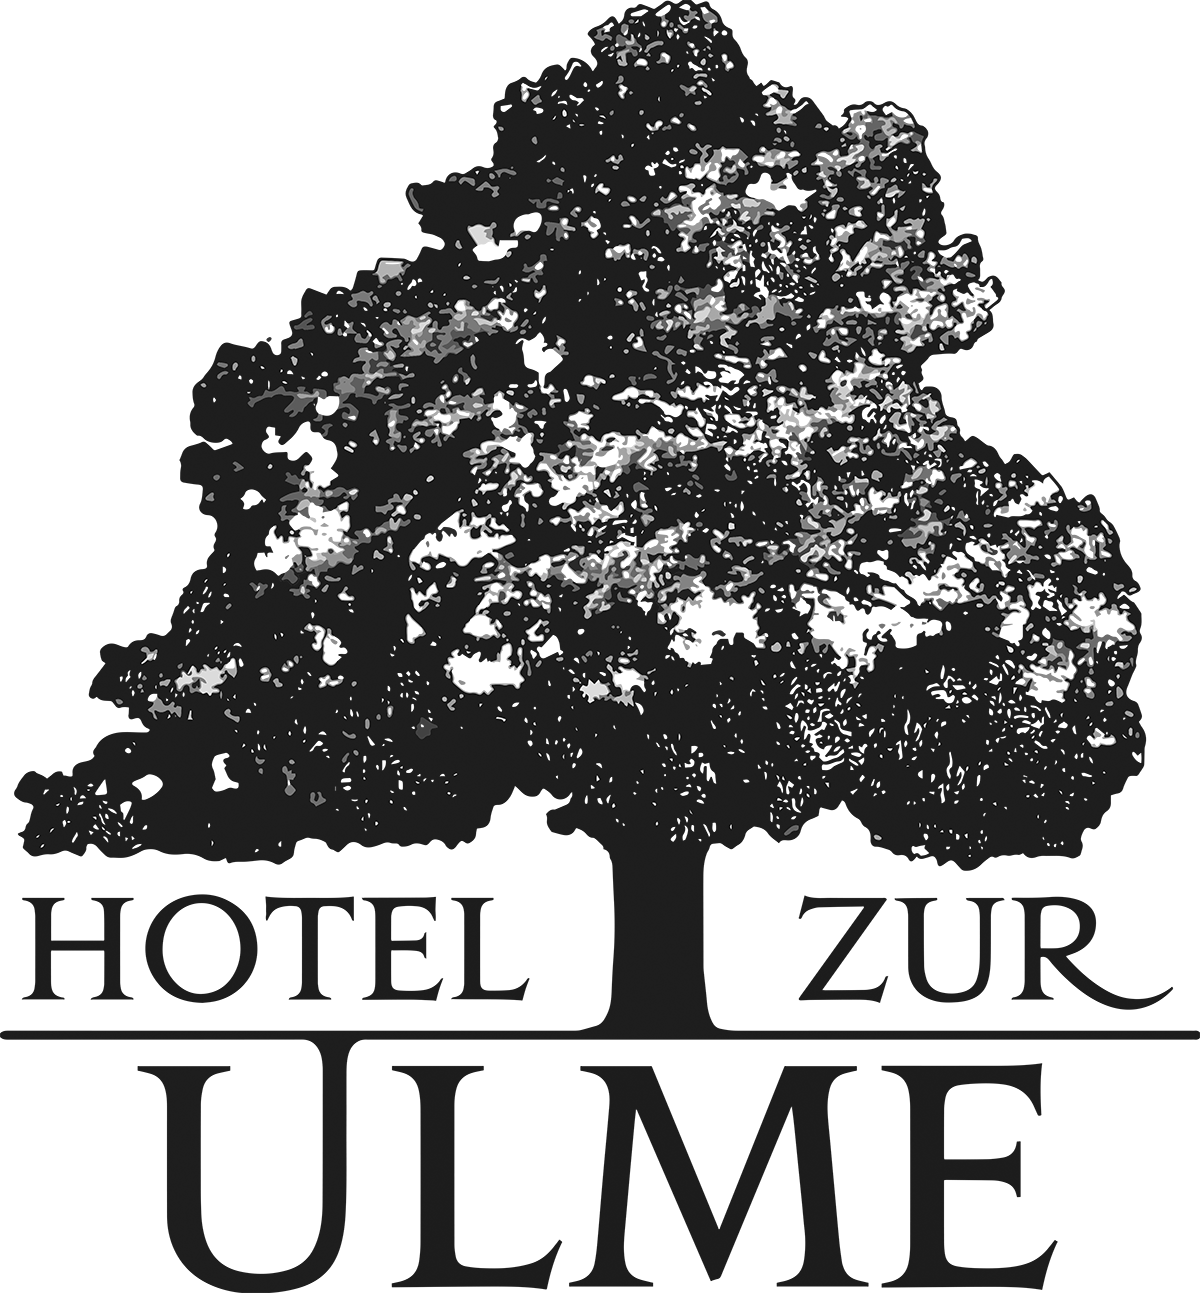 Hotel zur Ulme